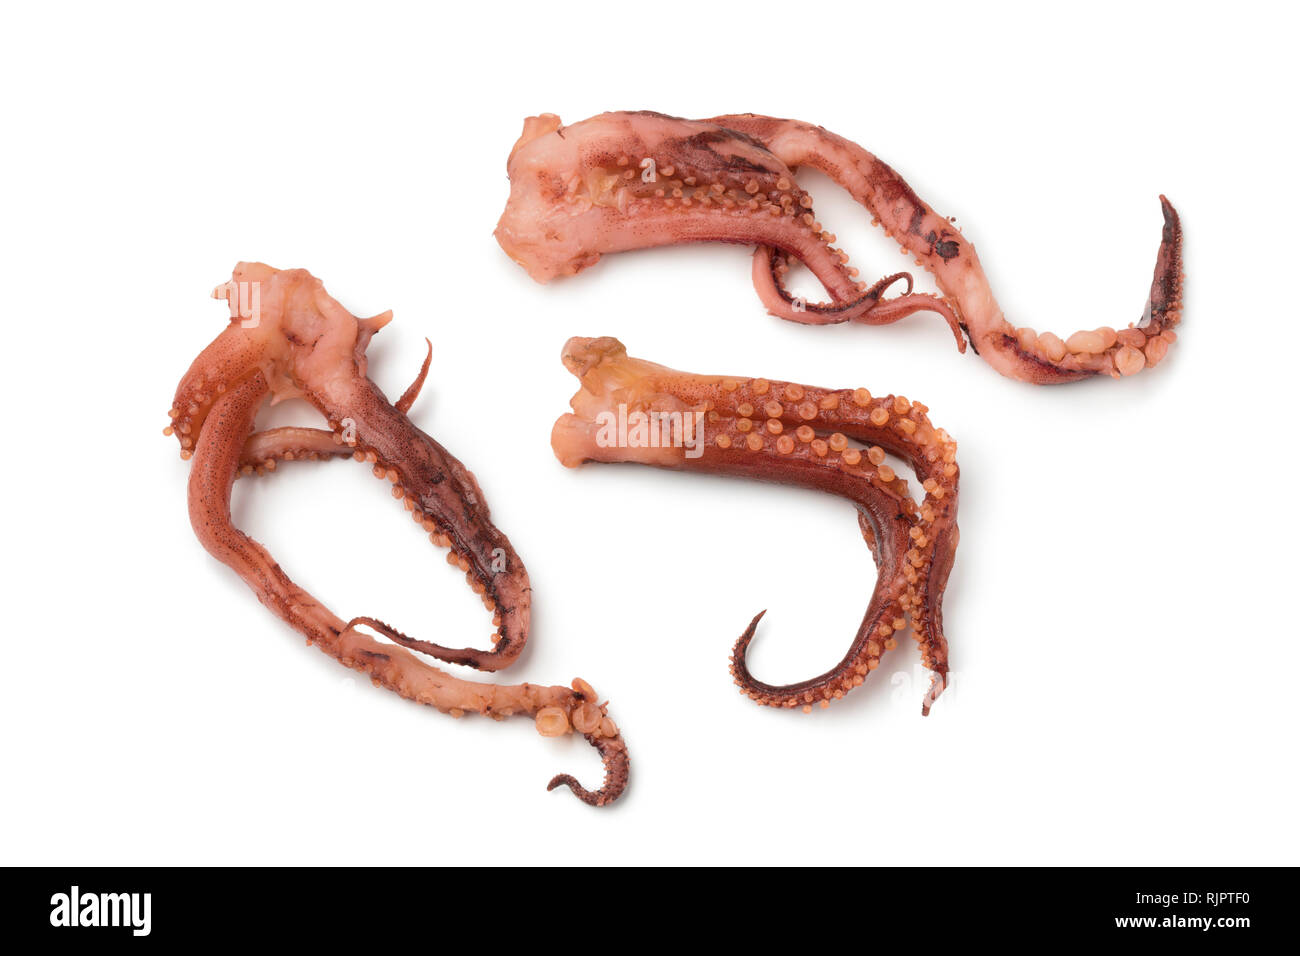 Giapponese calamari secchi tenctacles con sapore di aceto isolati su sfondo bianco Foto Stock